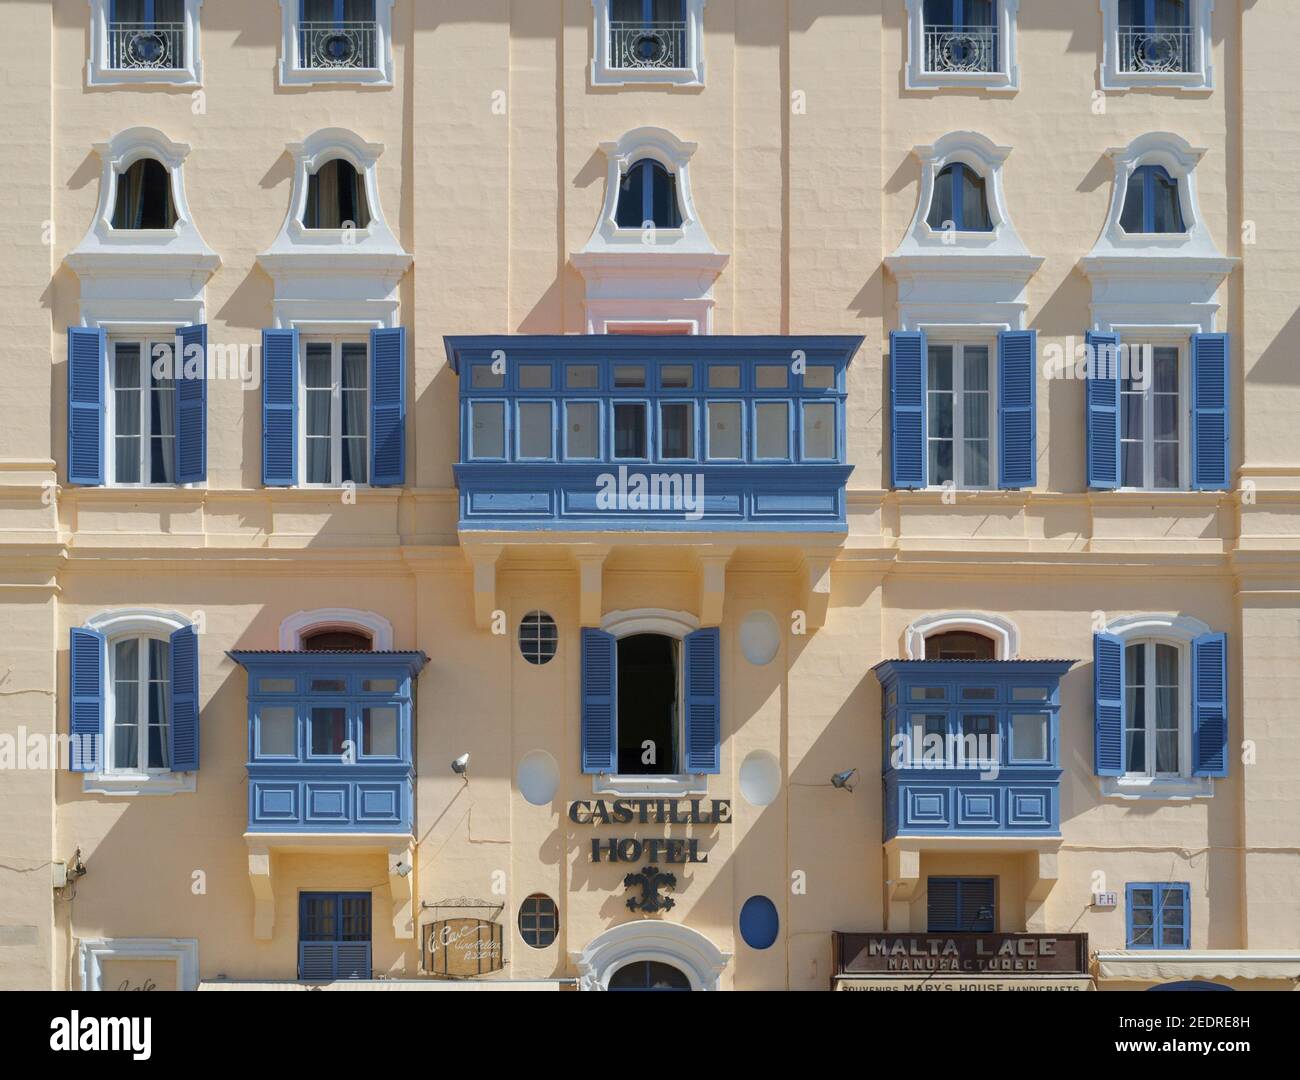 Balcons et fenêtres maltais traditionnels en bois sur le Castille Hotel, Castille St, Valletta Malte Banque D'Images